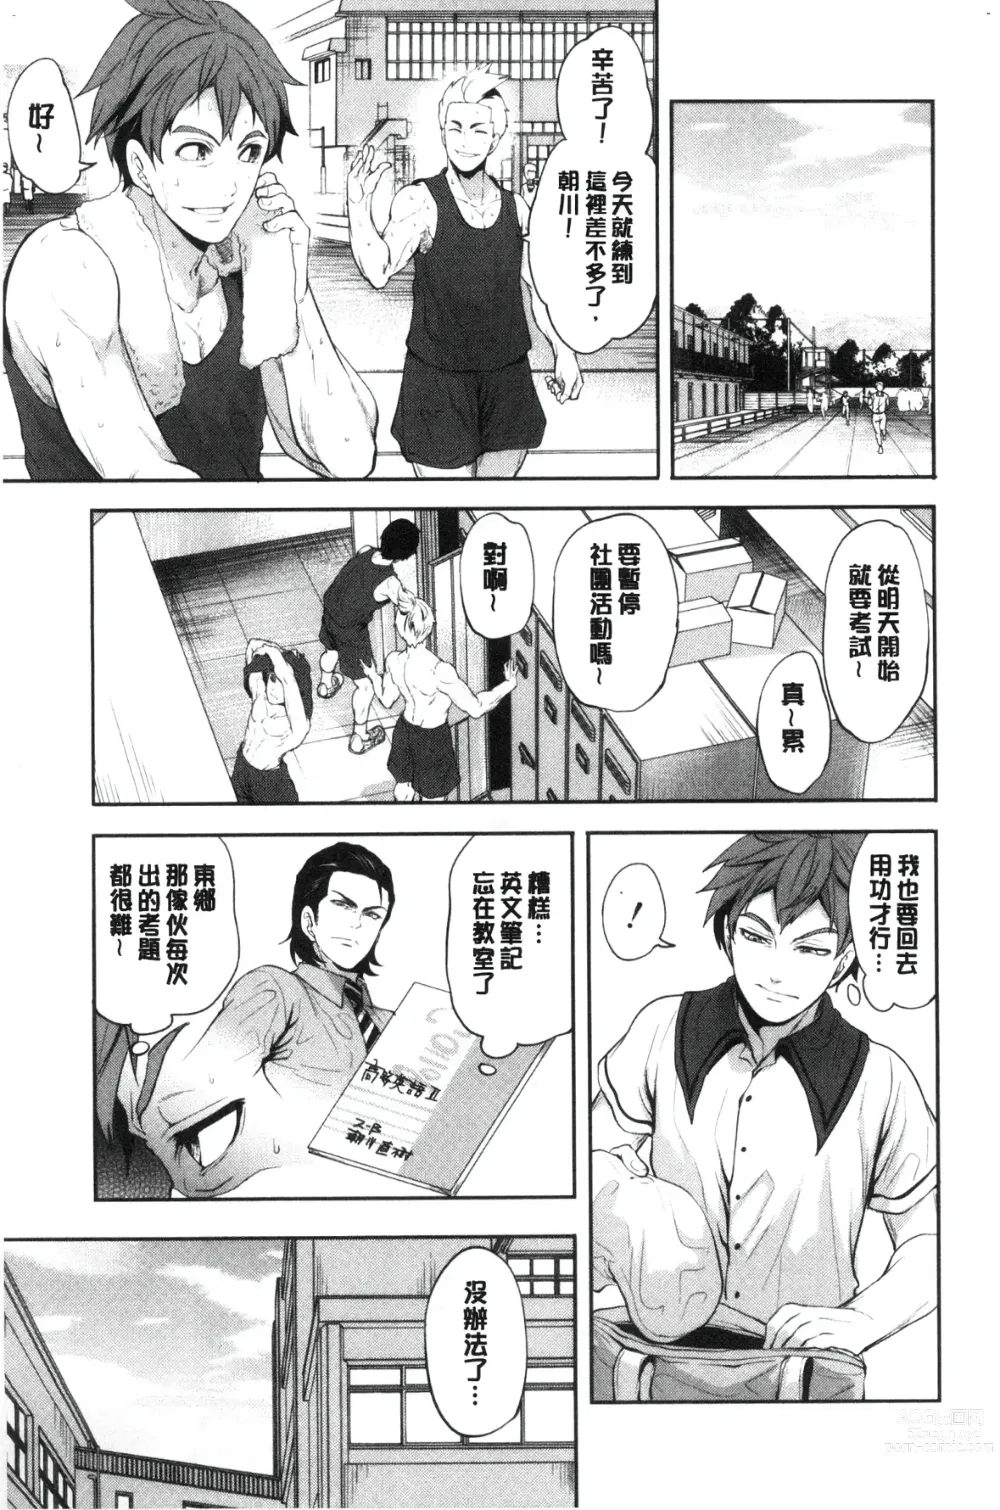 Page 13 of manga Suki na Ko ga, Betsu no Otoko to